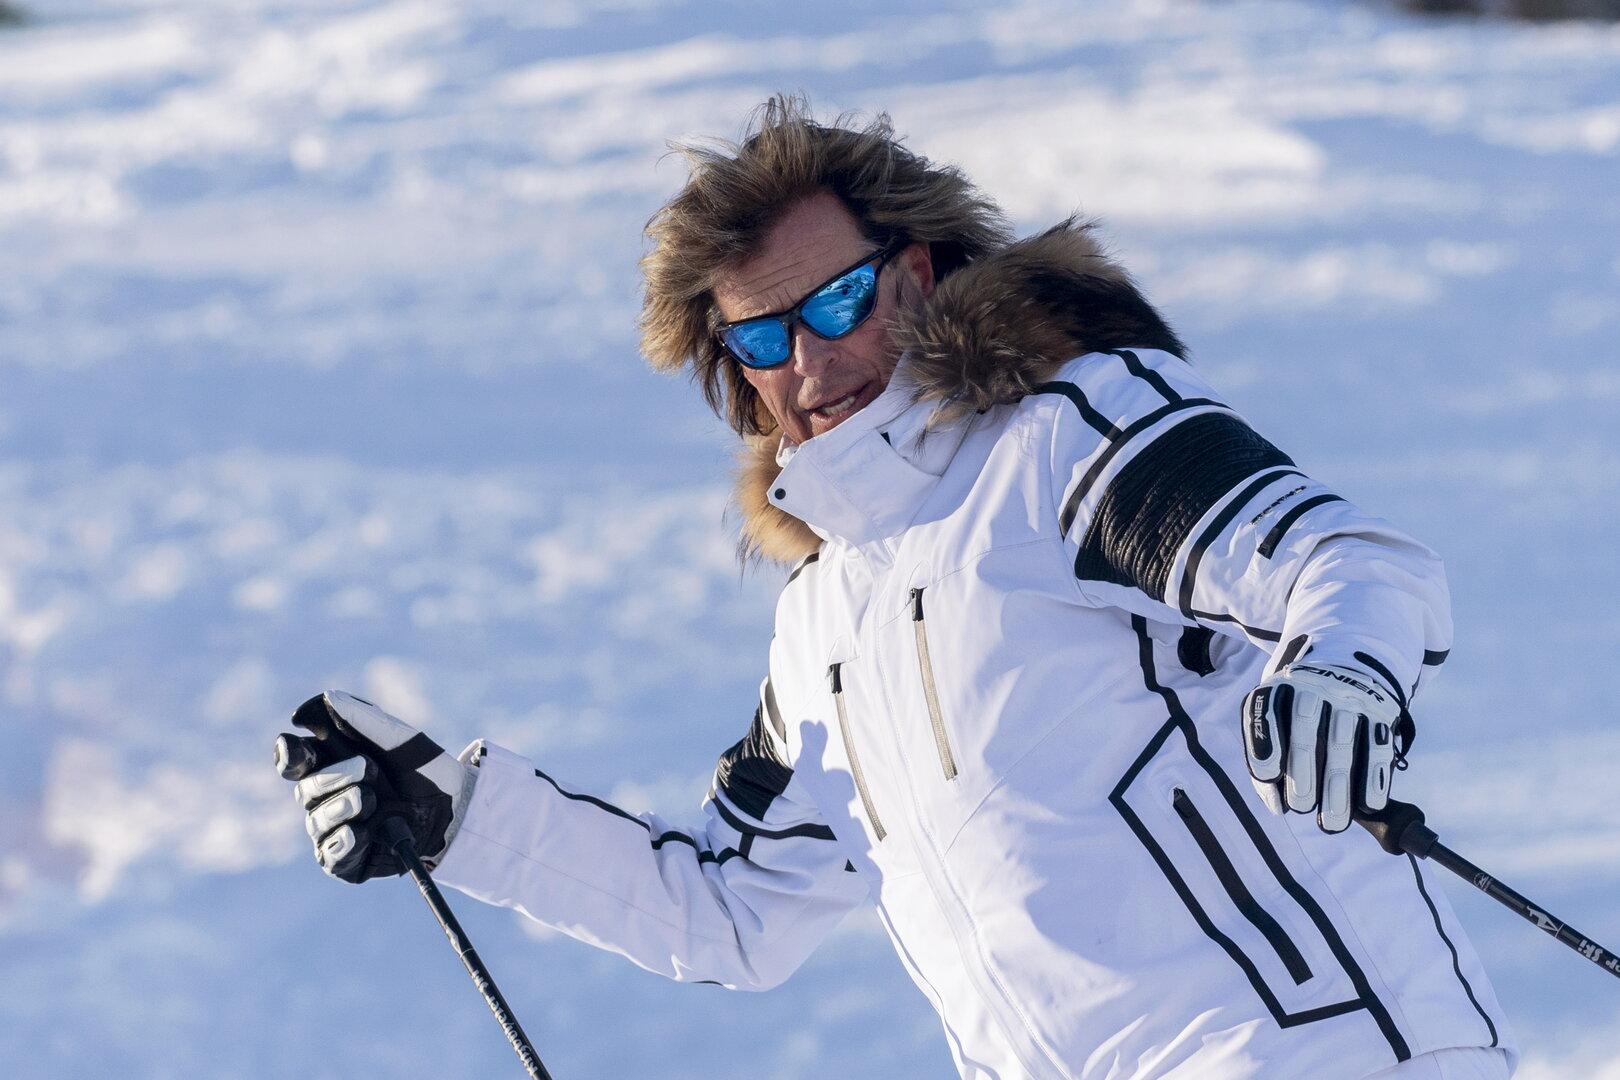 Slalomartist und Sänger: Hansi Hinterseer laufen sogar die Hirsche zu